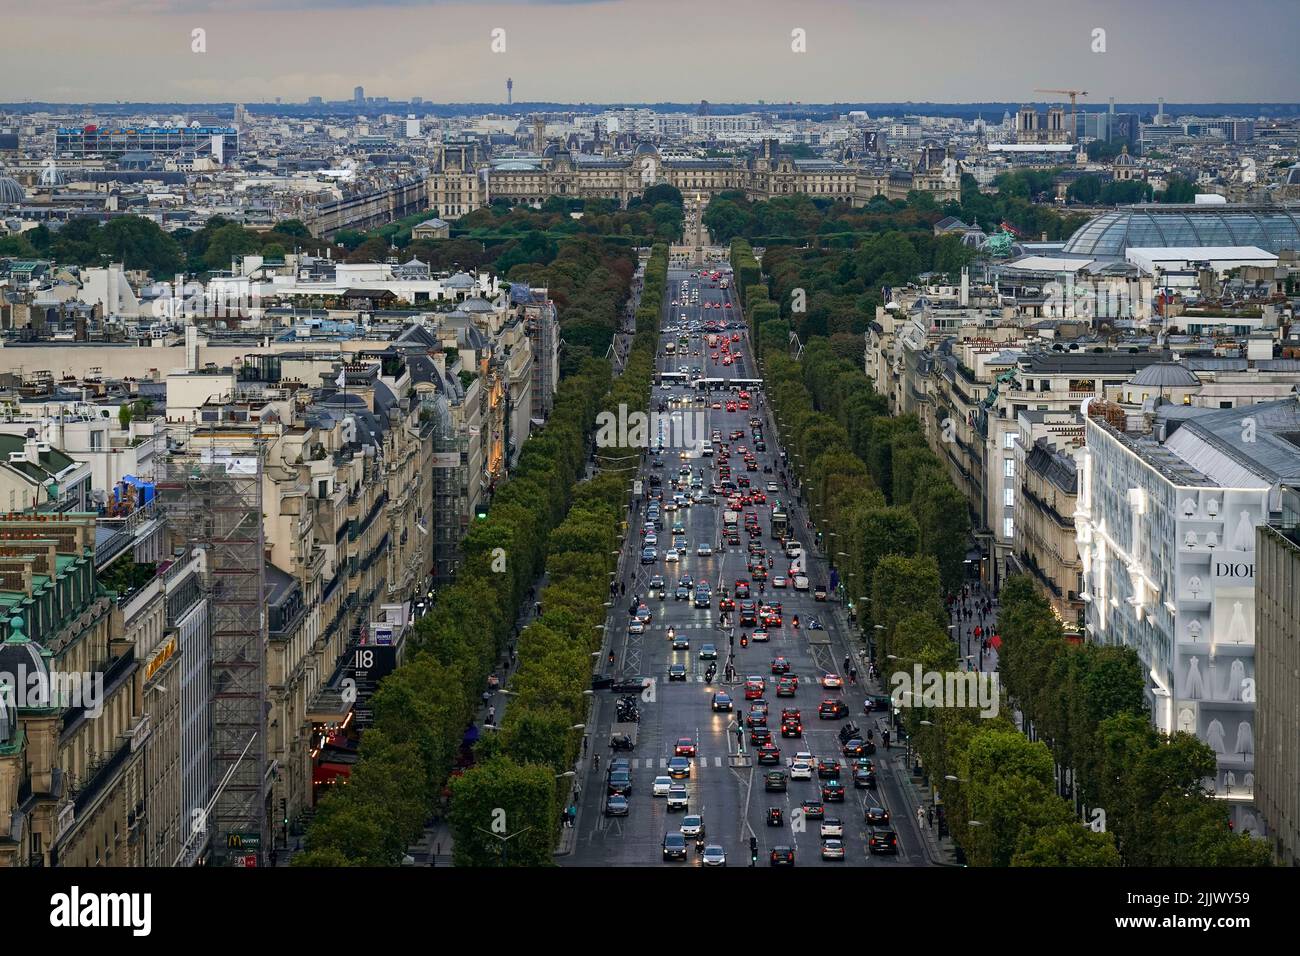 Francia, París, La Avenida de los Campos Elíseos es una avenida en el distrito 8th, que se extiende entre la Plaza de la Concordia en el este y la Plaza Foto de stock